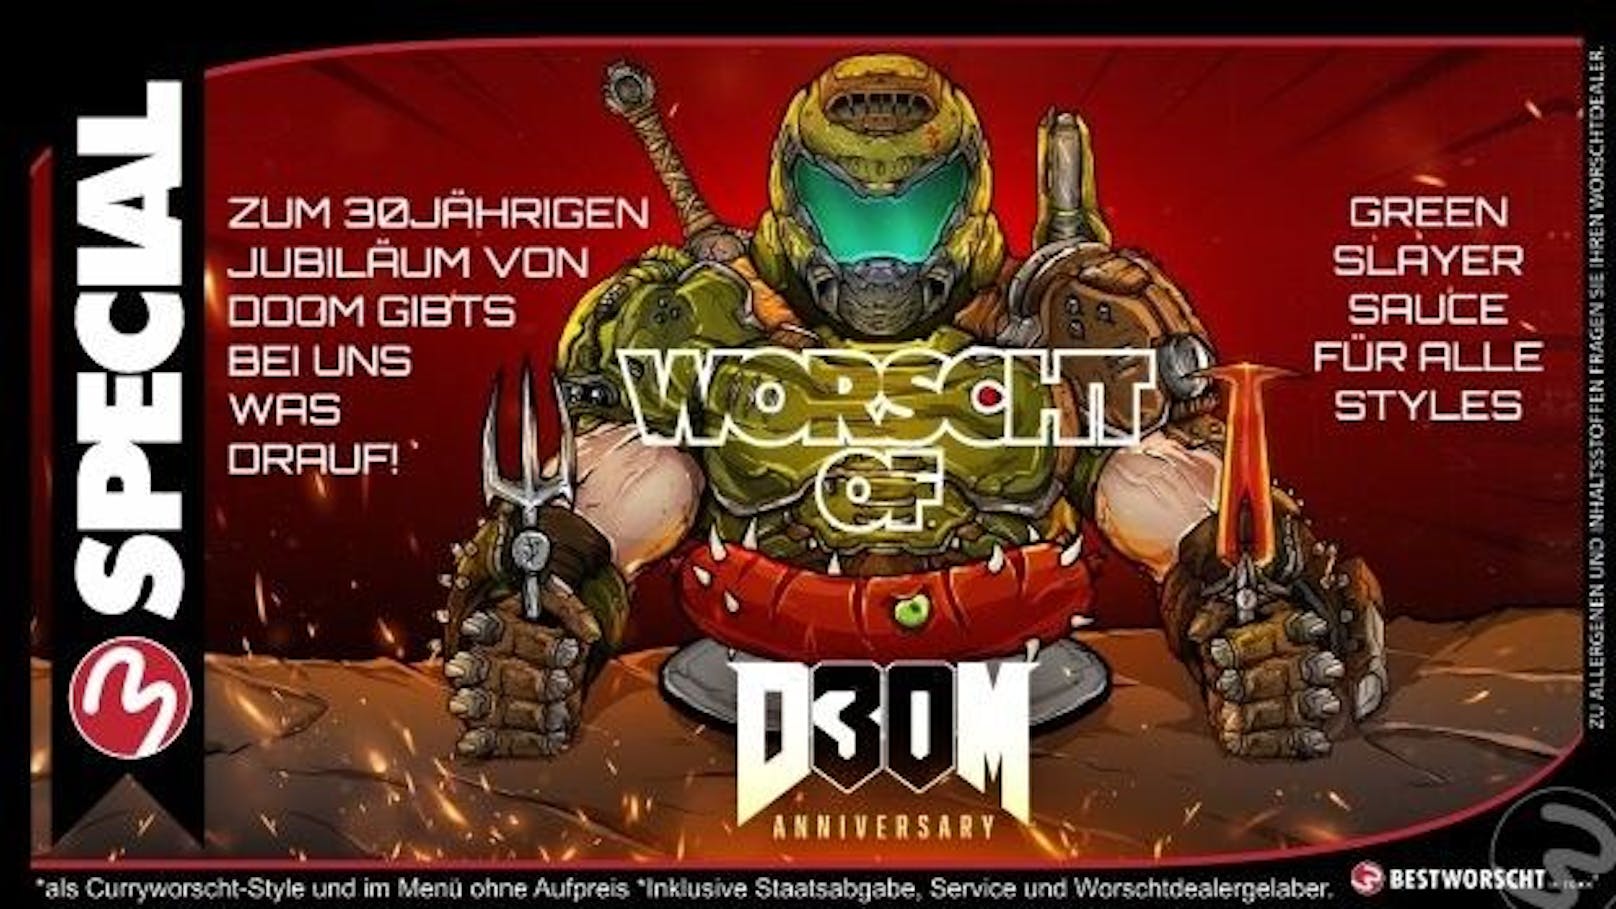 Zum 30. Geburtstag von "Doom": "Best Woscht in Town" kreiert eigene Sauce - die Green Slayer Sauce.